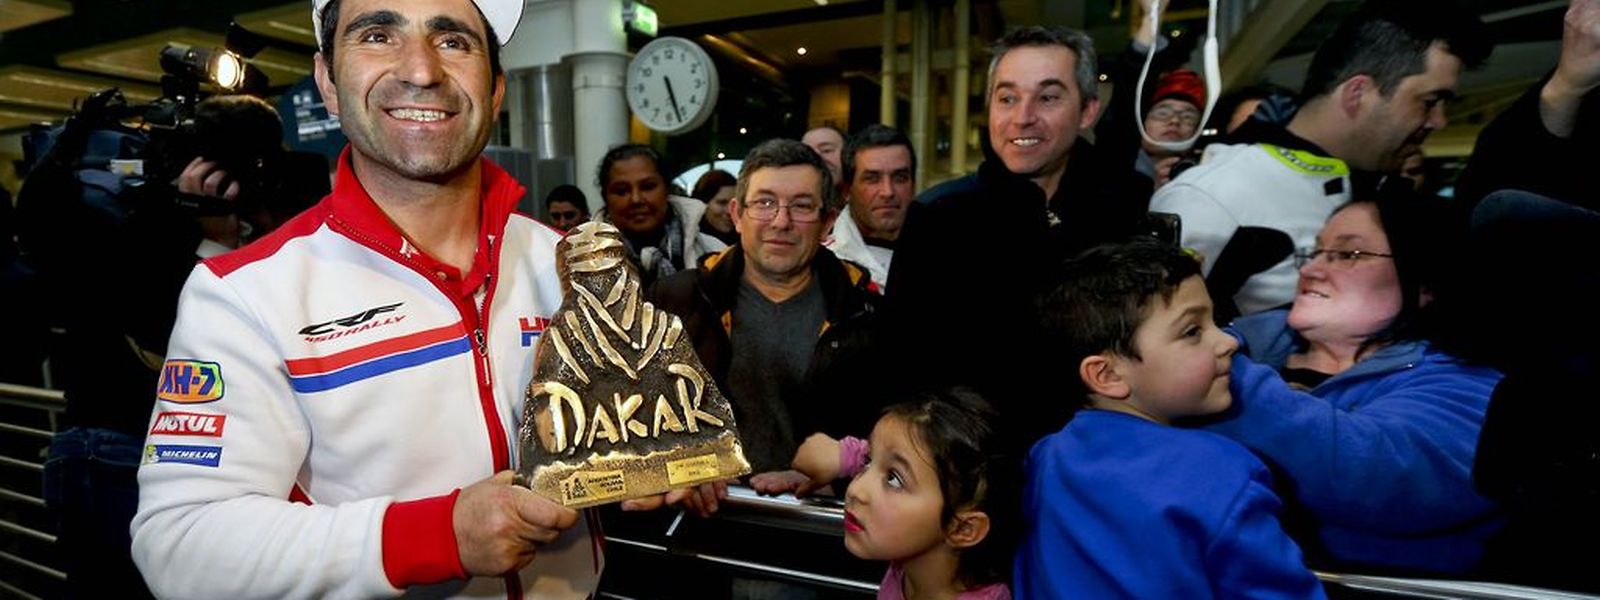 O piloto luso que conquistou o 2.º lugar na edição de 2015 Dakar, mostra o trofeu à chegada ao Aeroporto Francisco Sá Carneiro